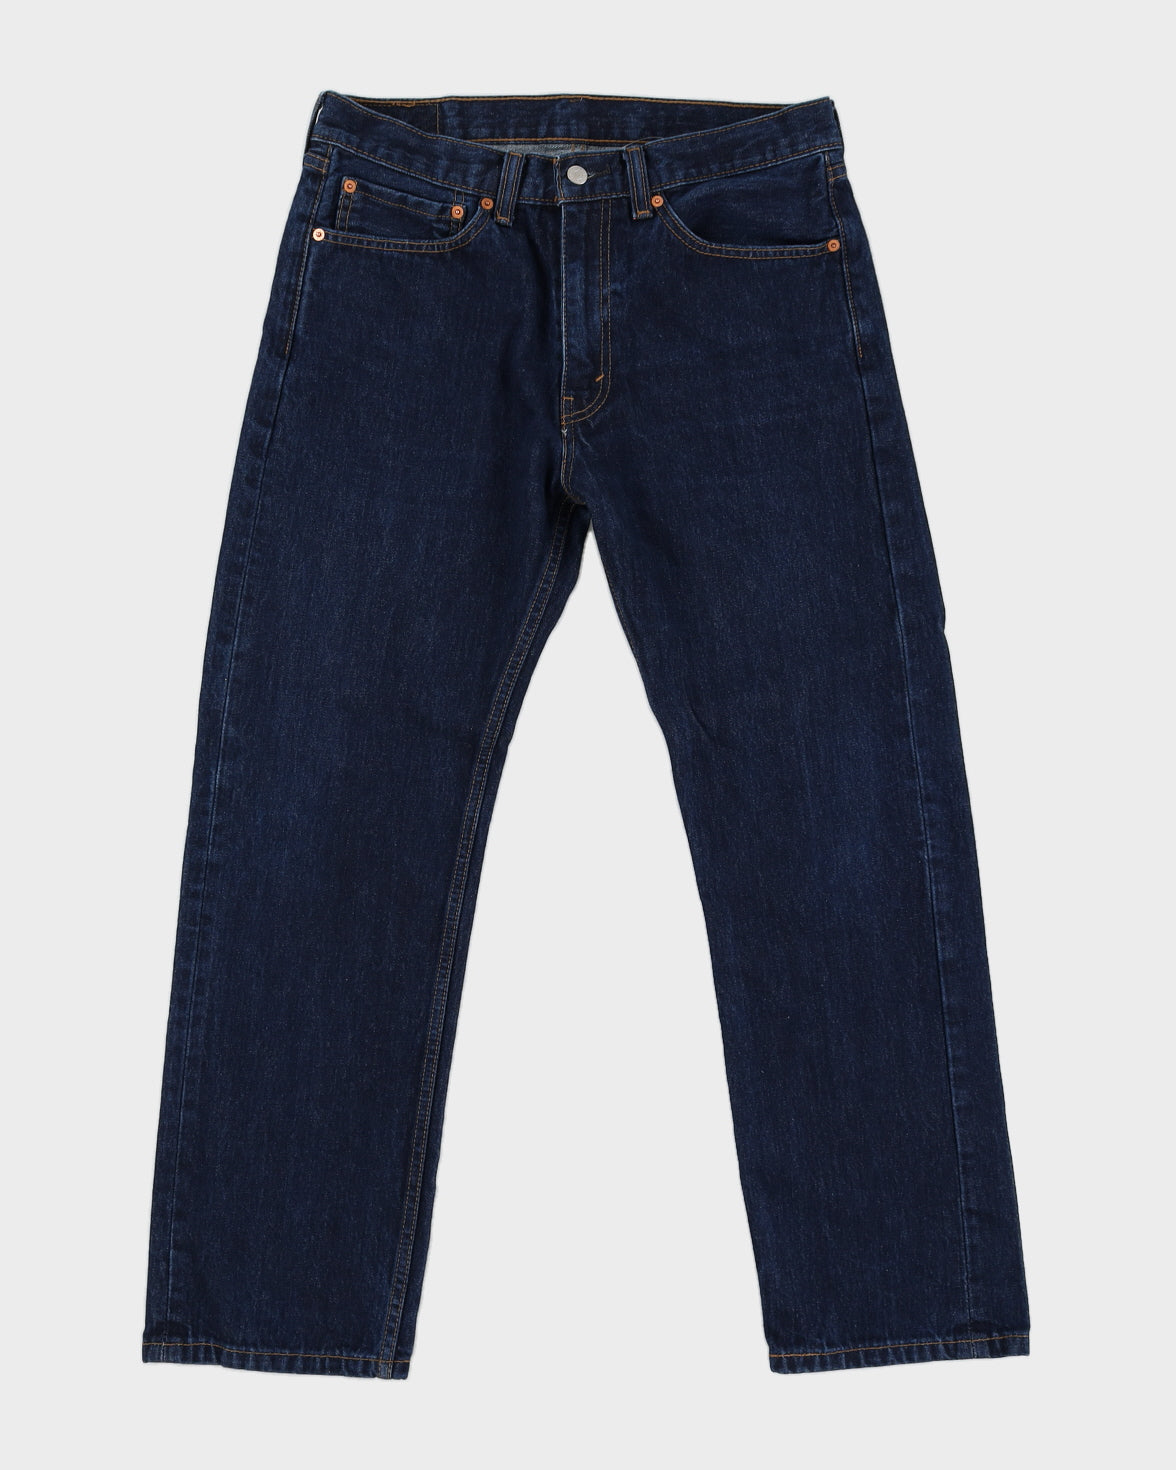 Levi's 505 Dark Wash Denim Jeans - W34 L30